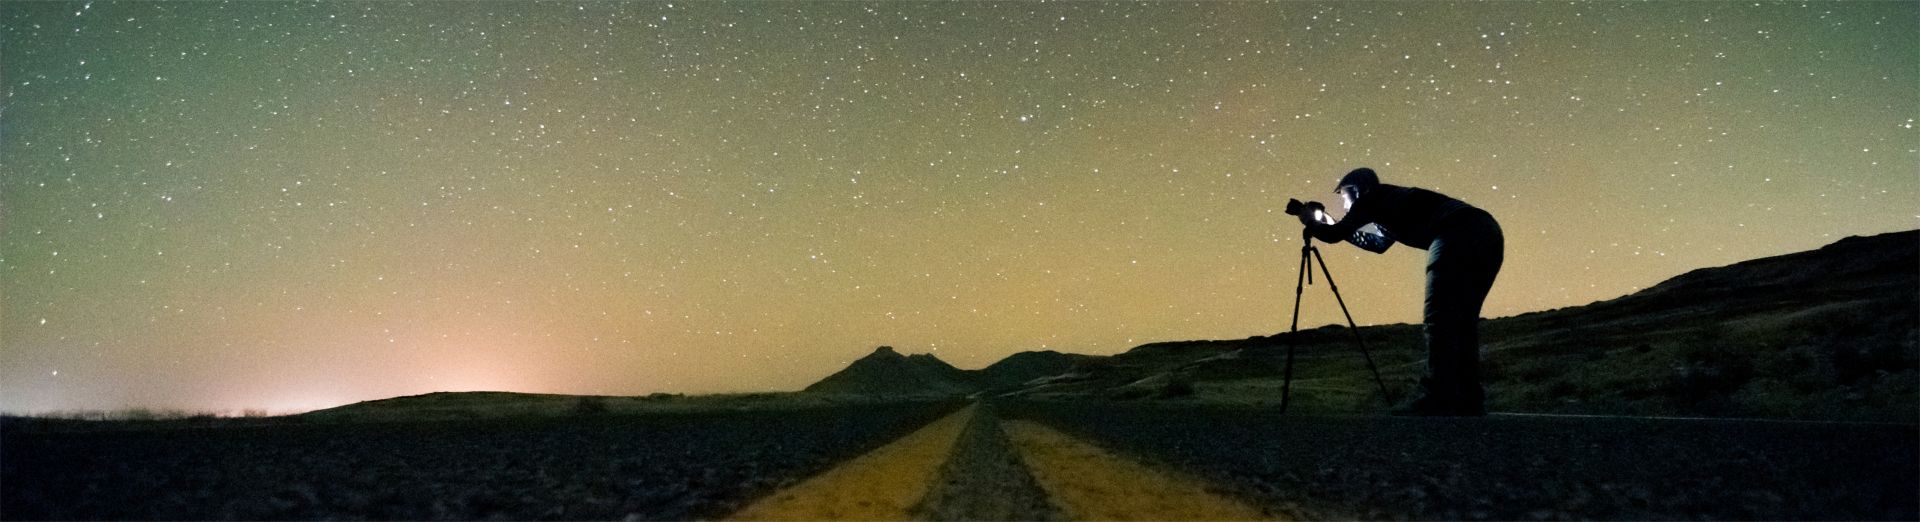 Foto de homem explorando as estrelas com uma câmera, representando o SAP Road Map Explorer